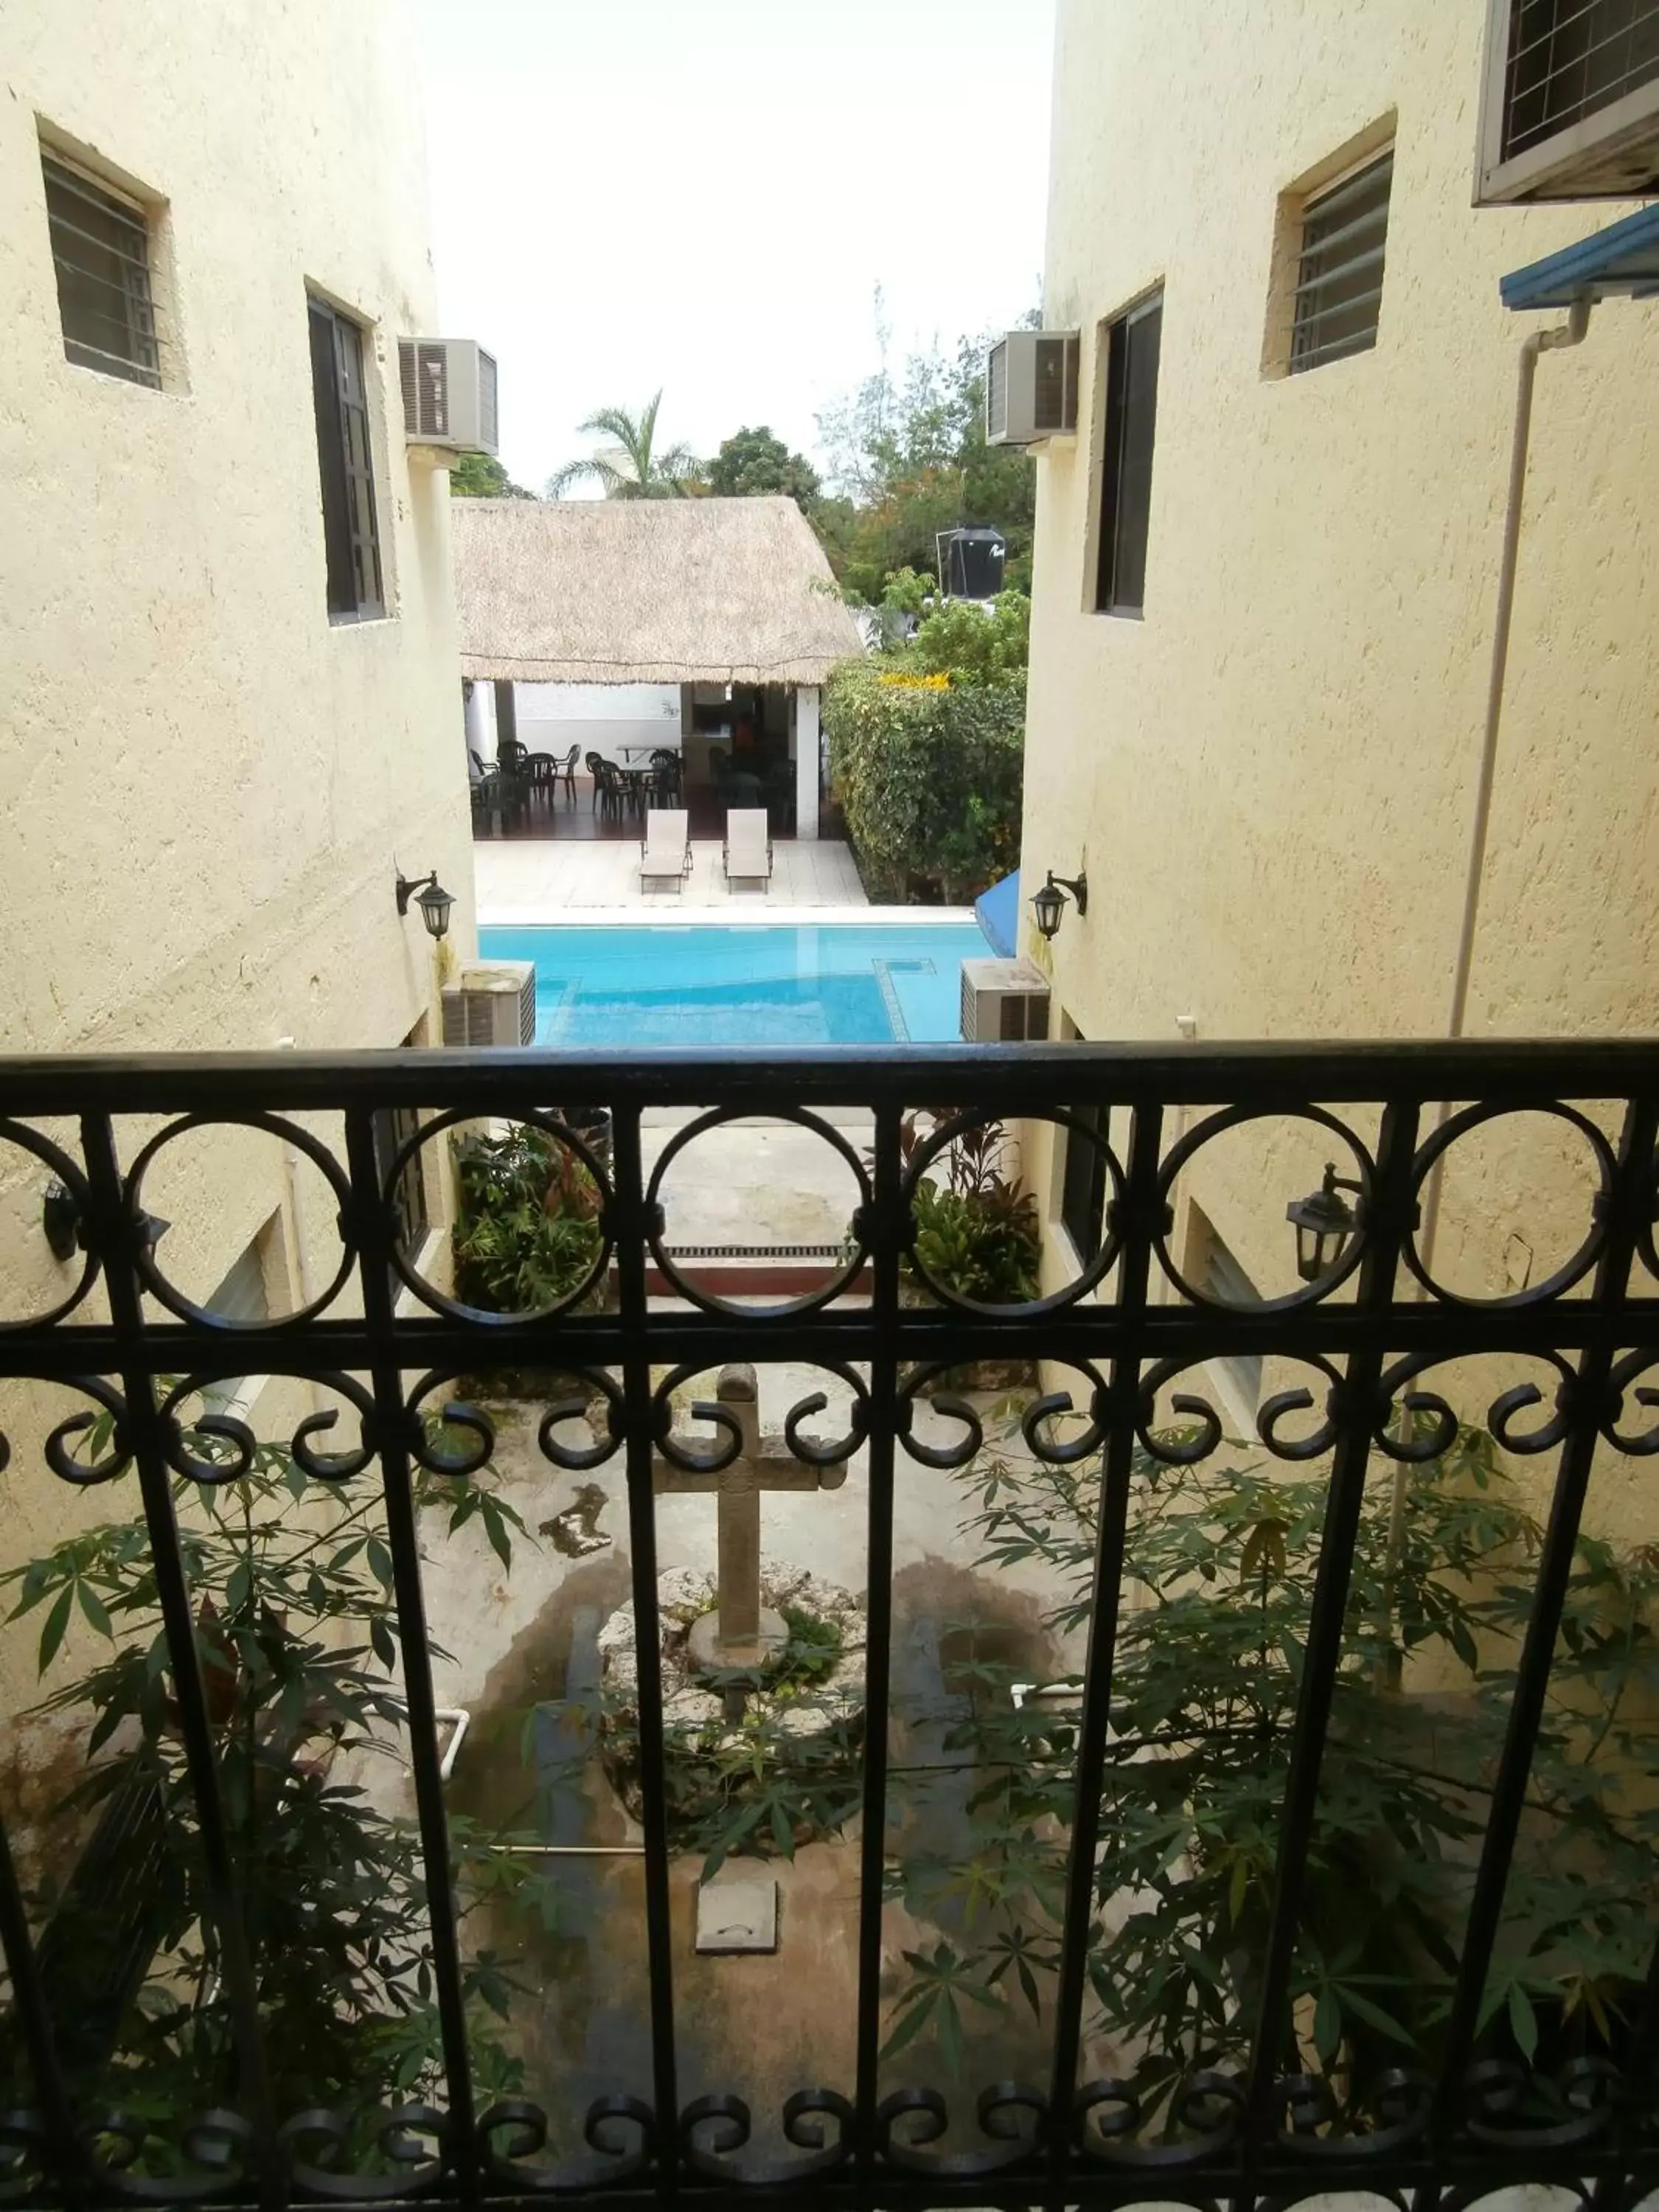 Decorative detail, Pool View in Hotel Hacienda Cancun